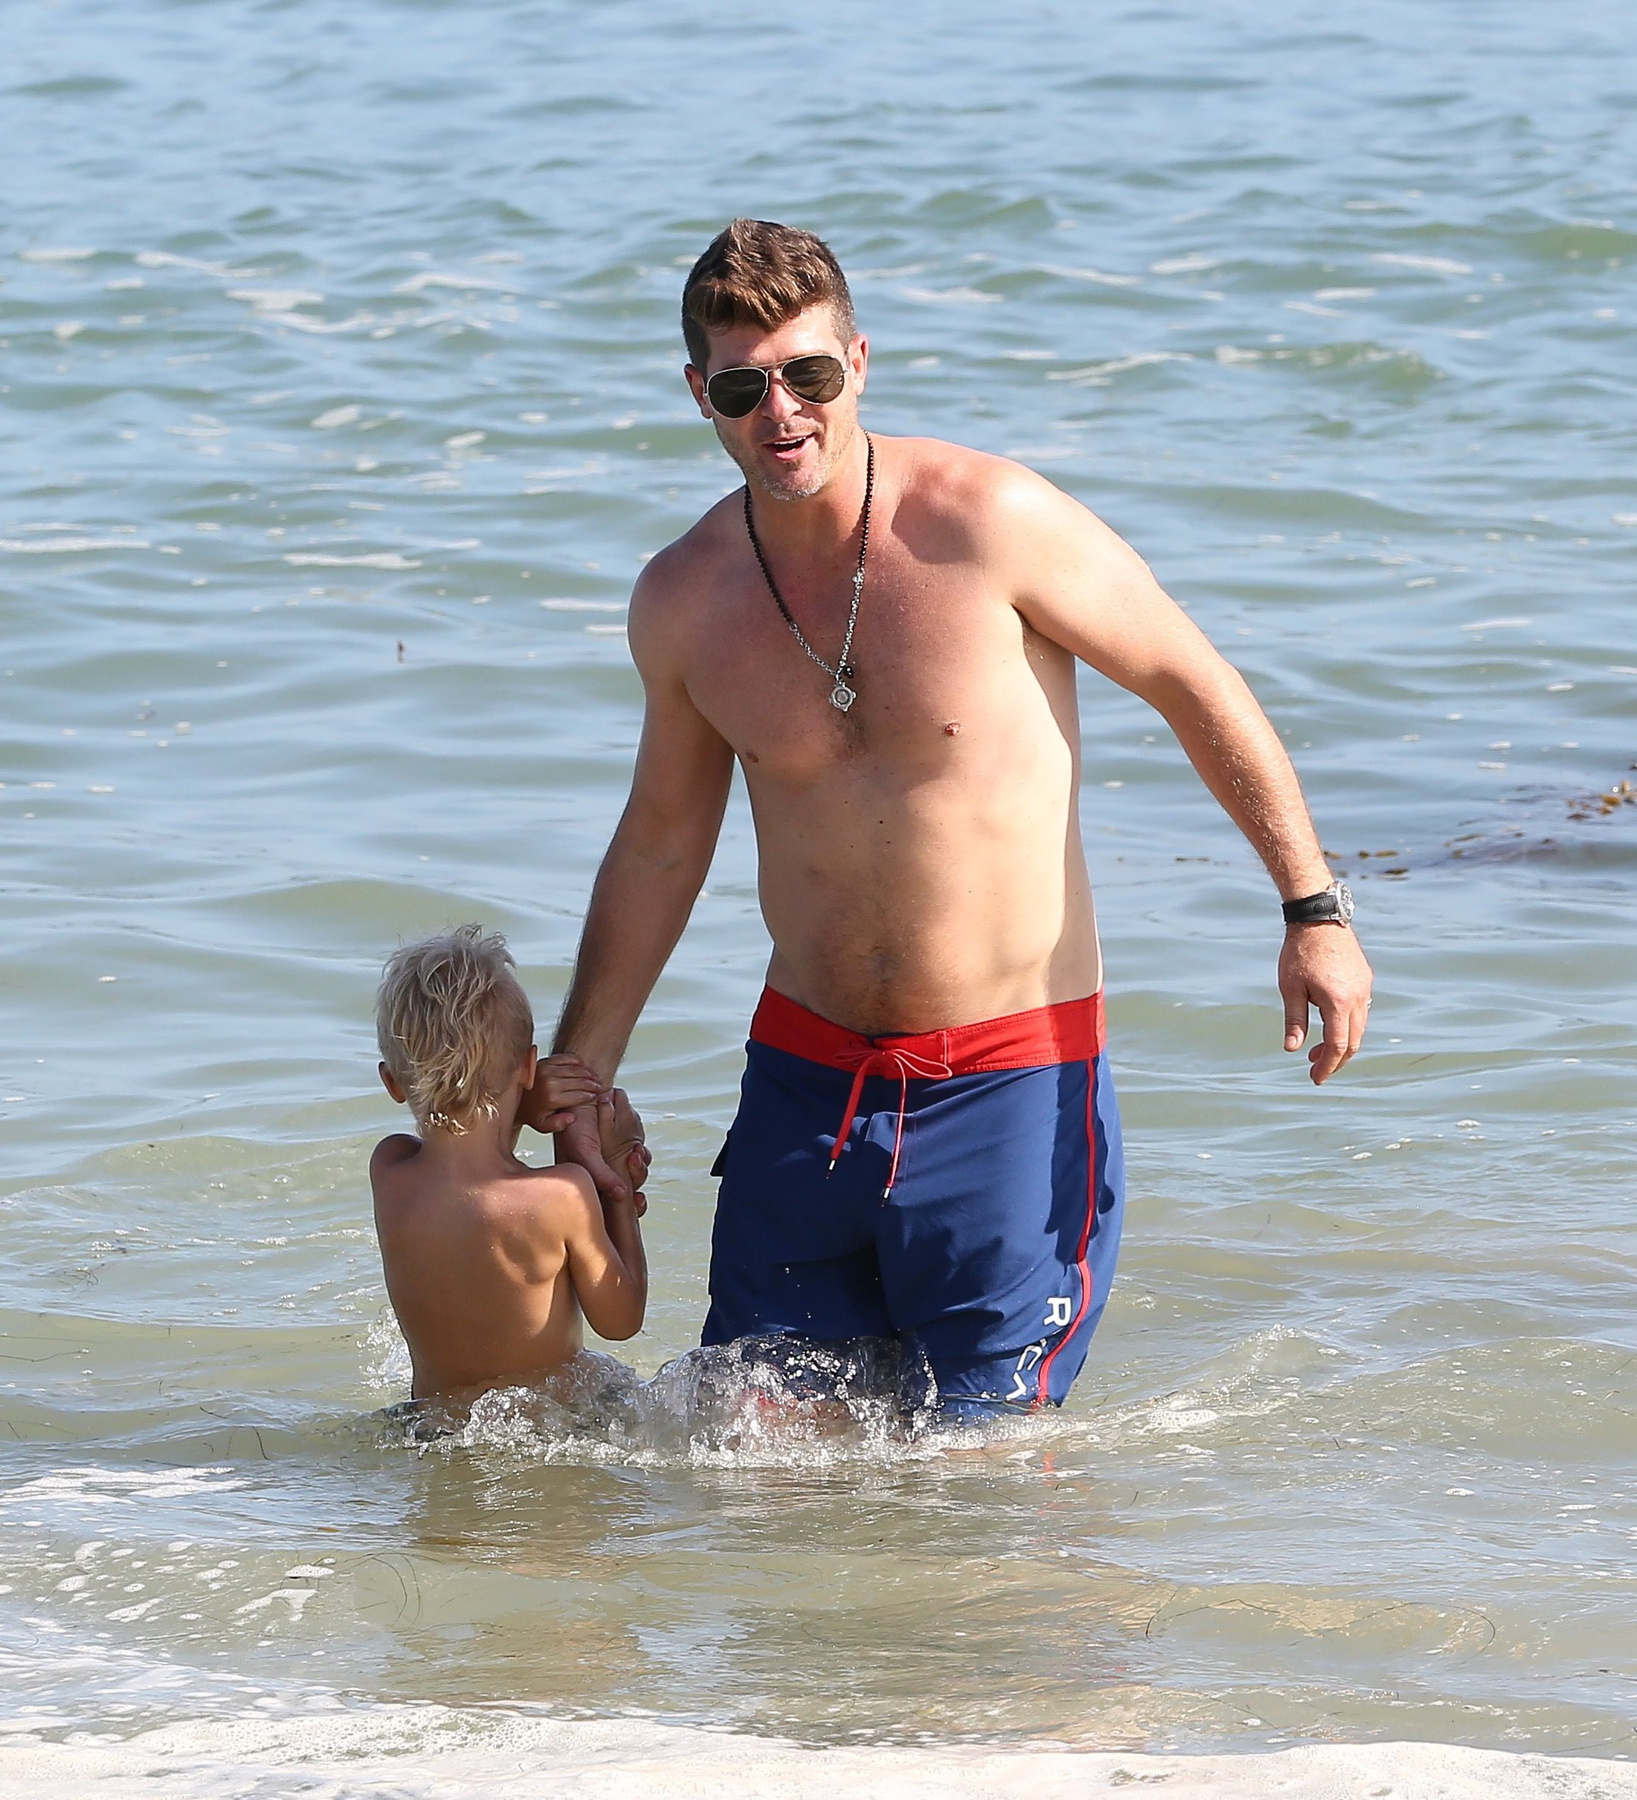 2015. augusztus 30. Robin Thicke barátnőjével és kisfiával strandol